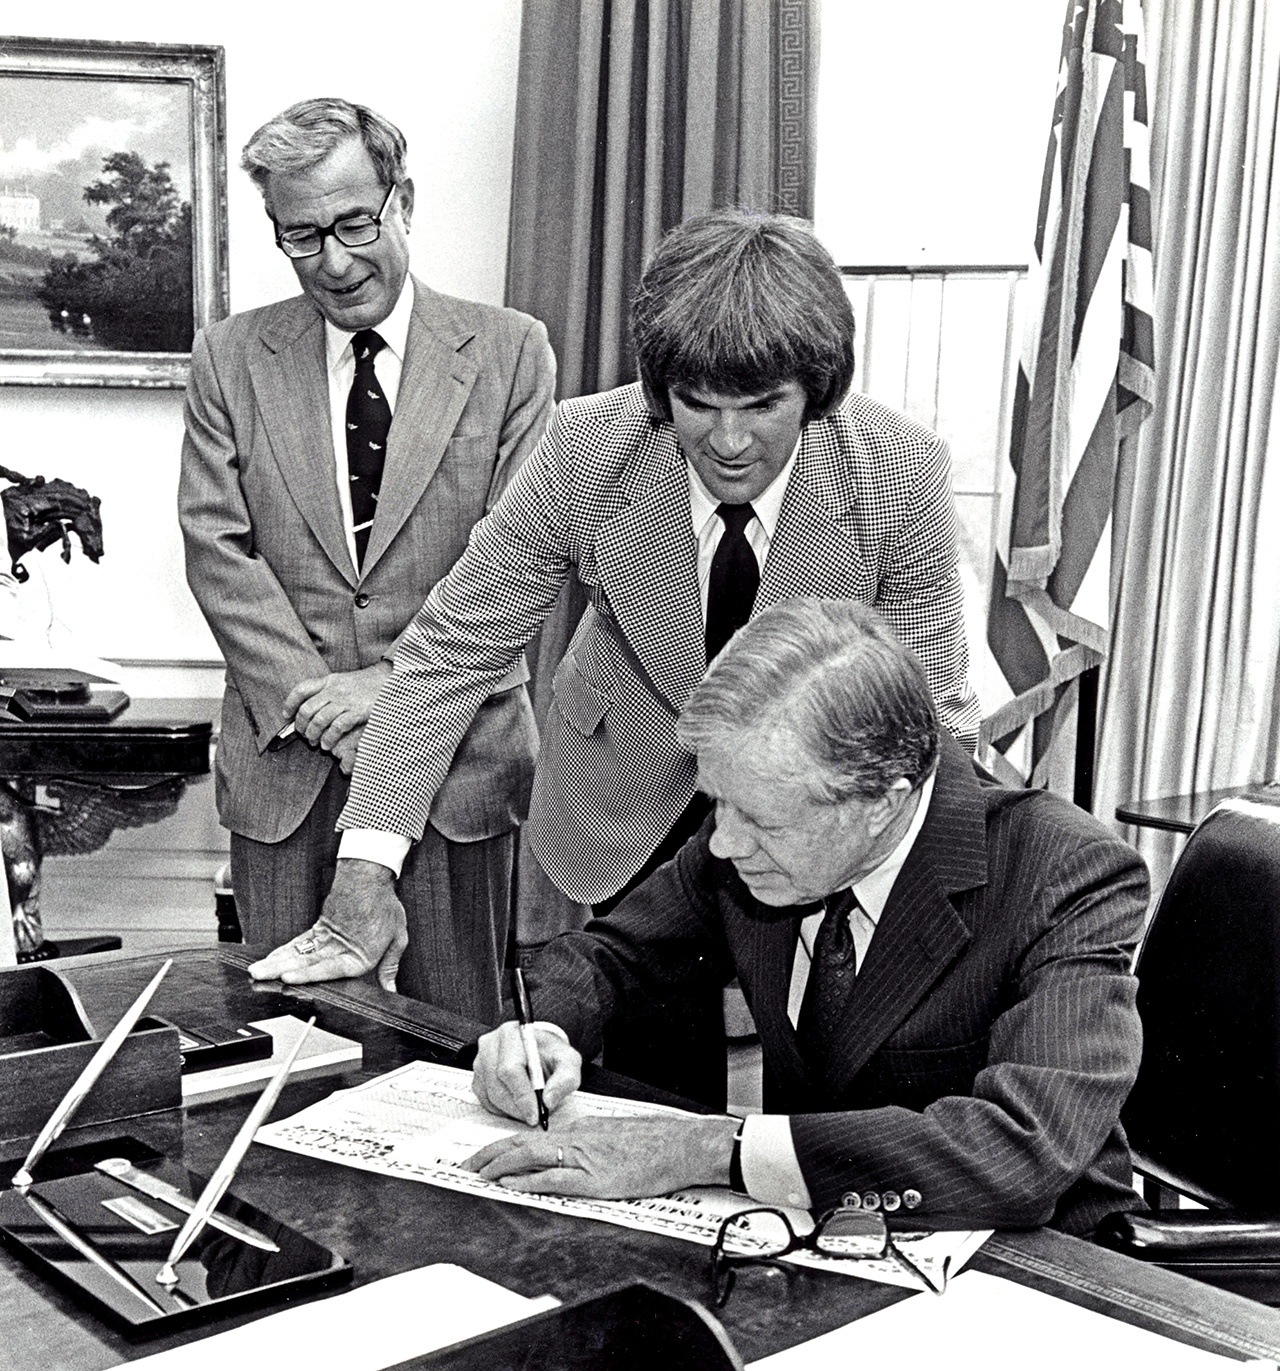 Первую директиву об оказании тайной помощи противникам просоветского режима в Кабуле президент Картер подписал 3 июля 1979 года.